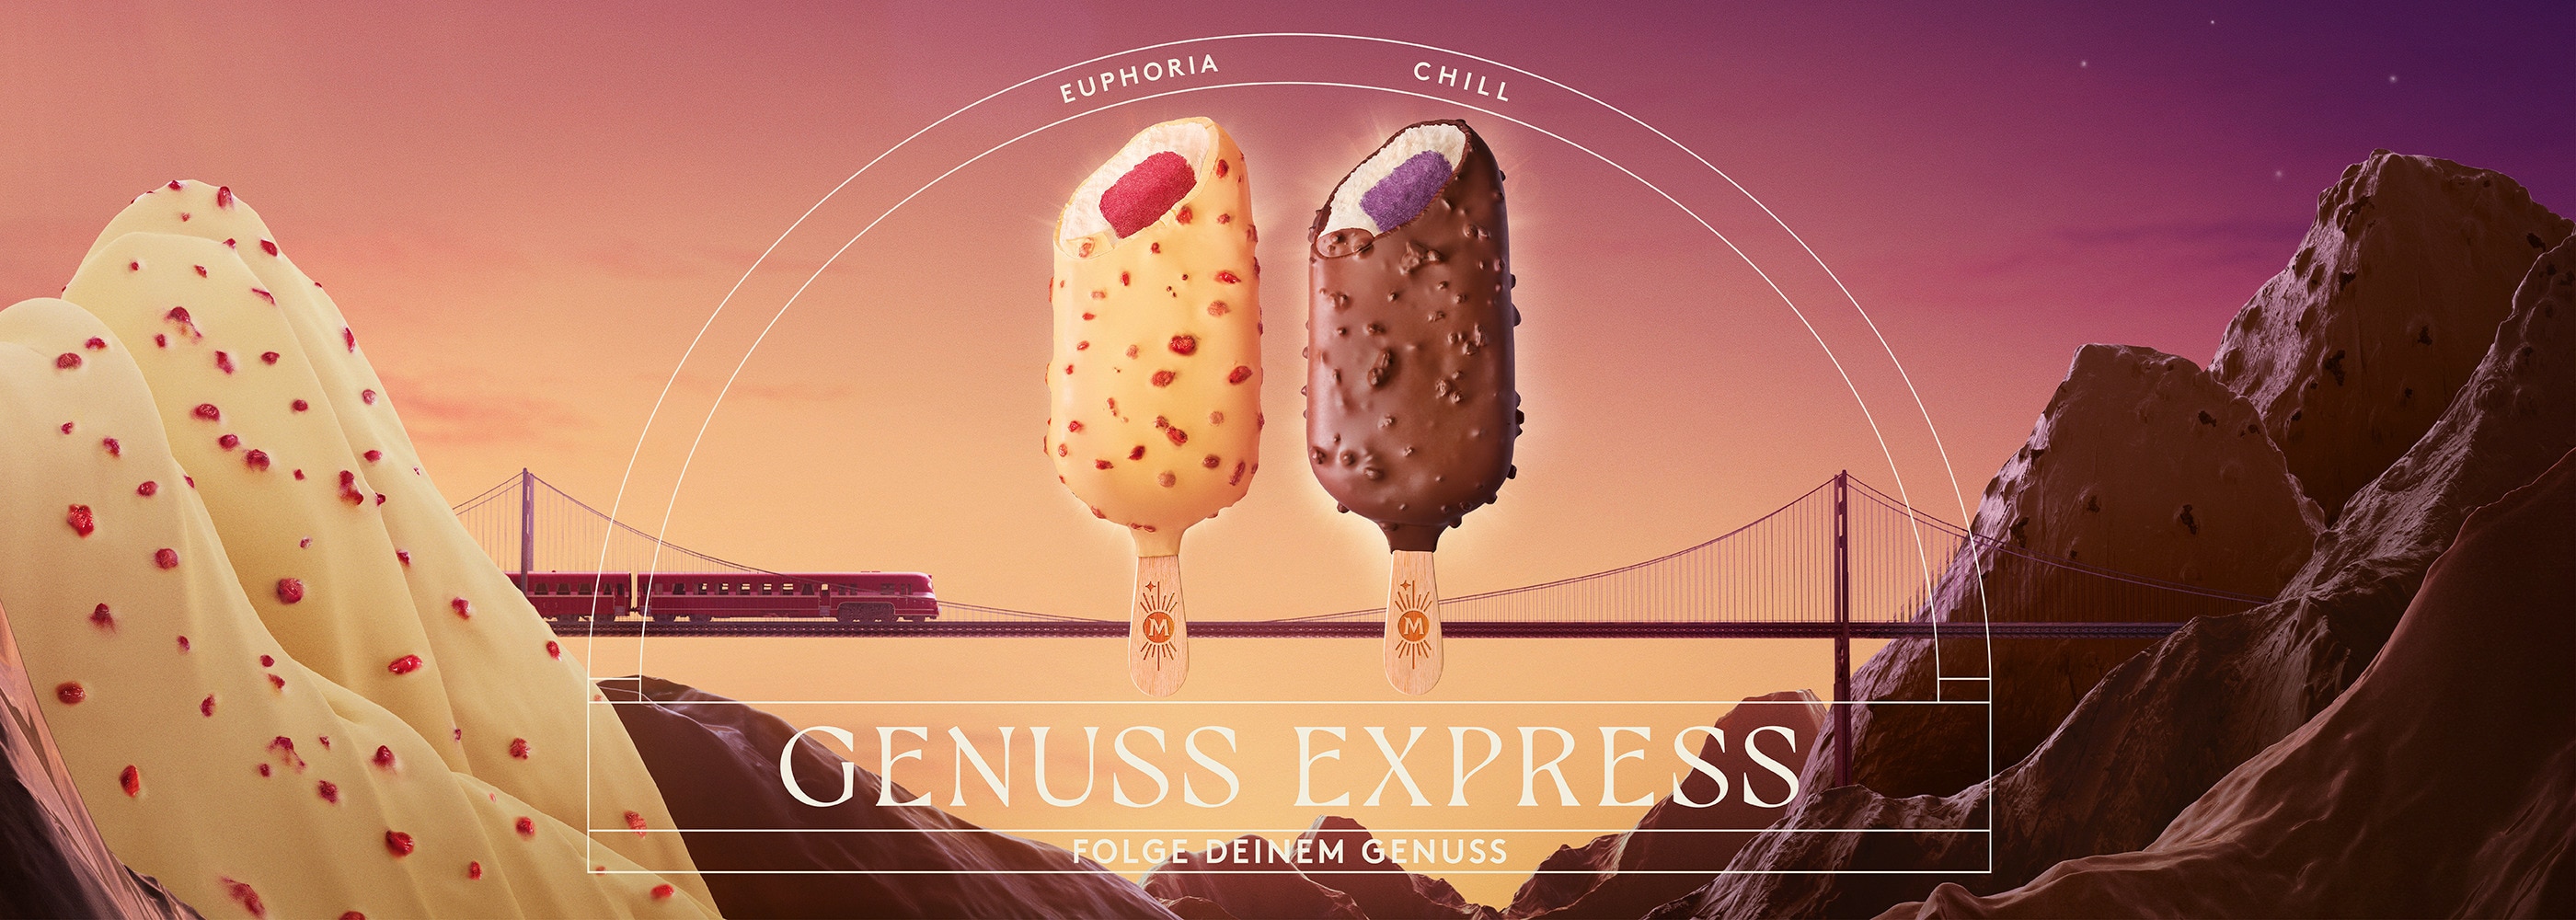 Die neuen Produkte Magnum Euphoria und Chill auf einer Landschaft aus Schokolade, Sorbet und Glace. Text: Genuss Express; Folge deinem Genuss